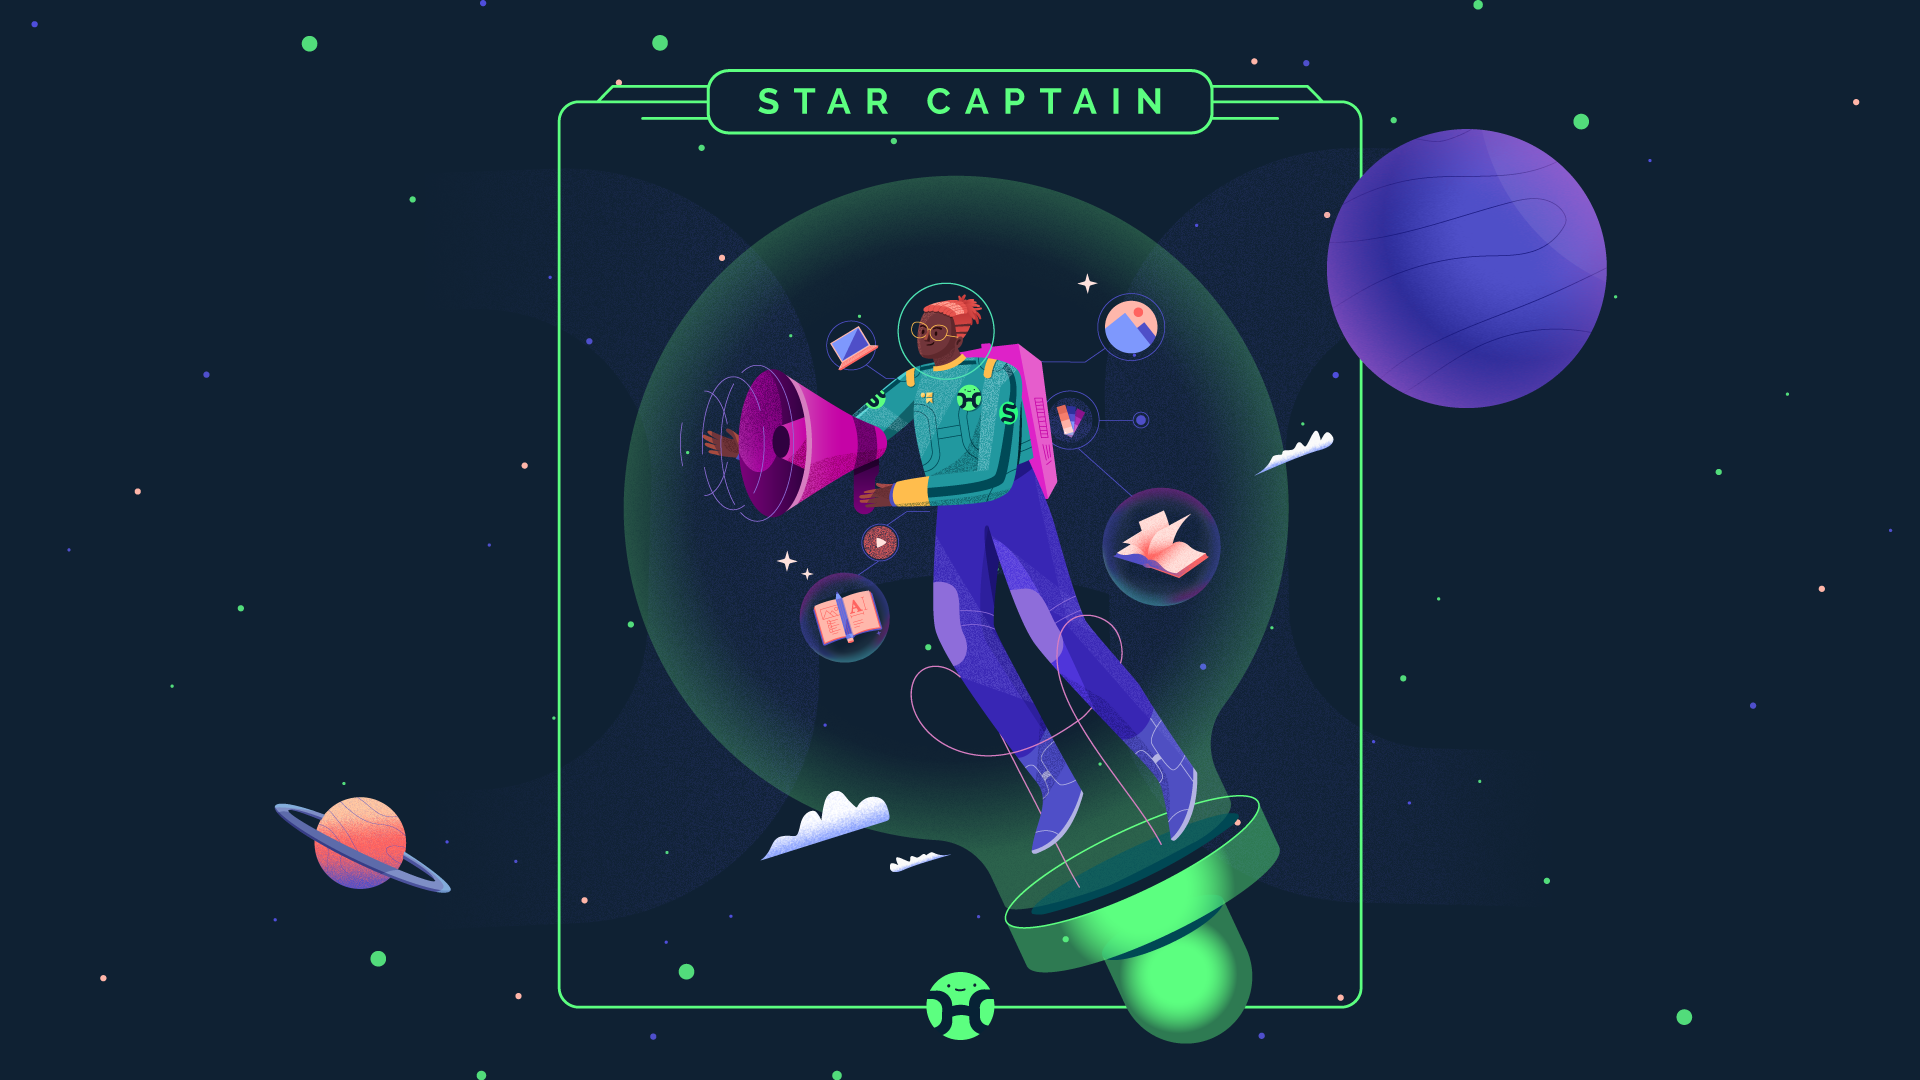 Star captain